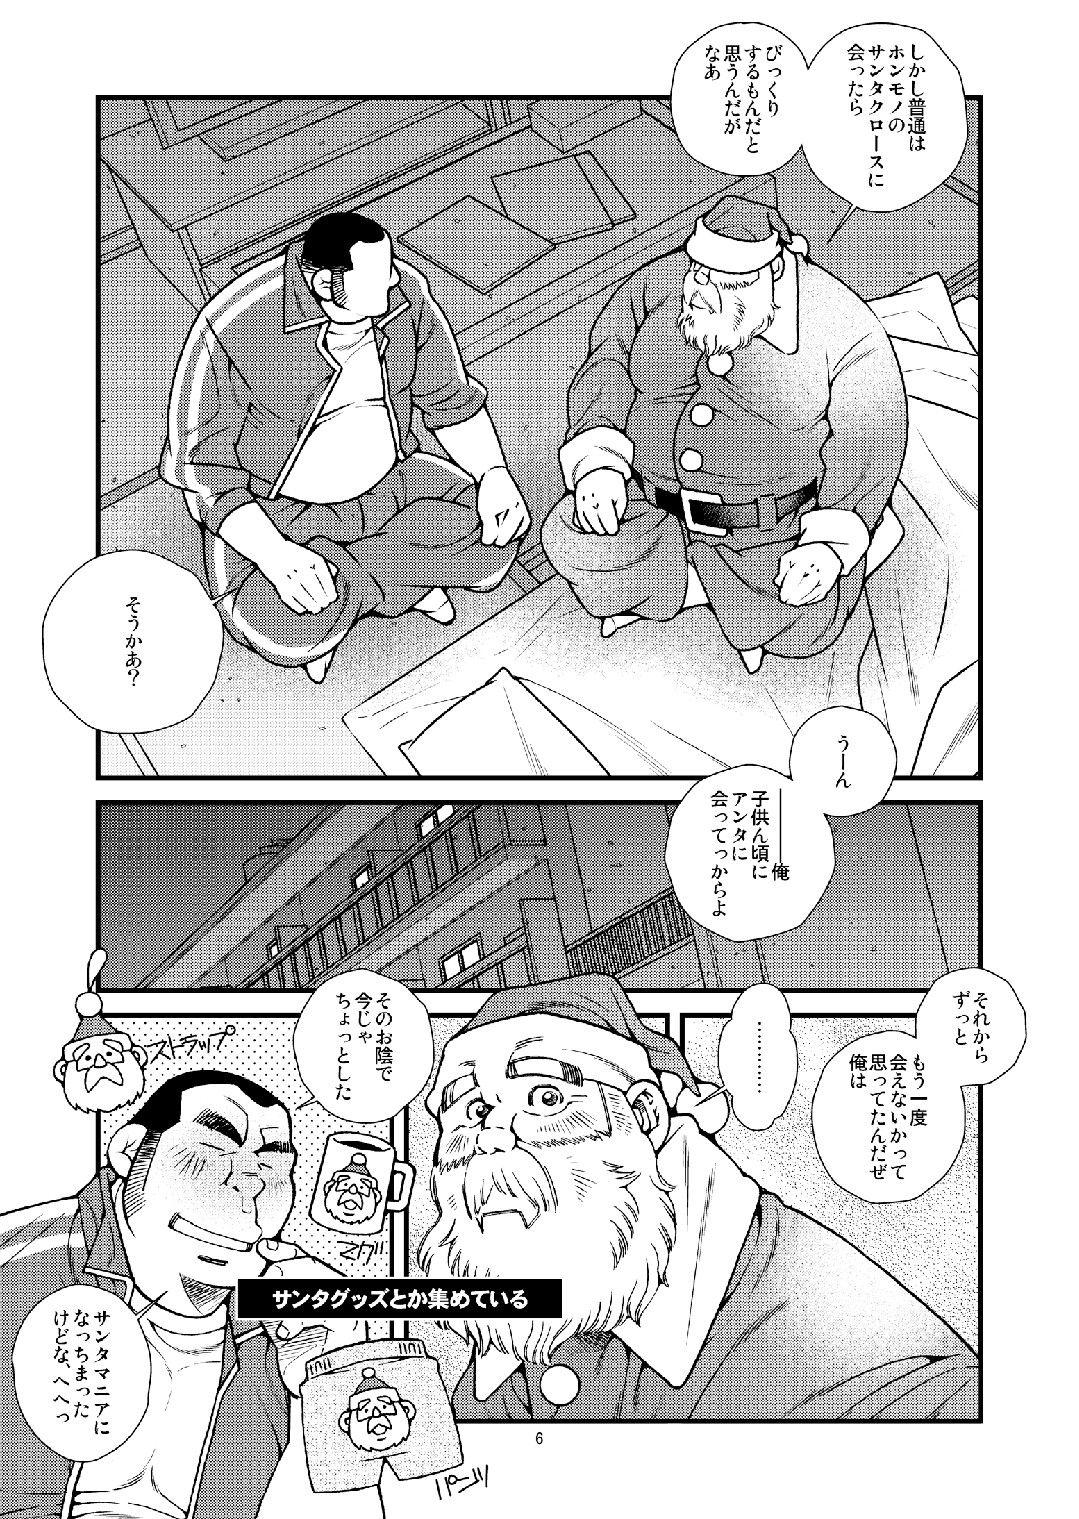 Manatsu ni Santa ga Yattekita - Santa Claus in Summer 6